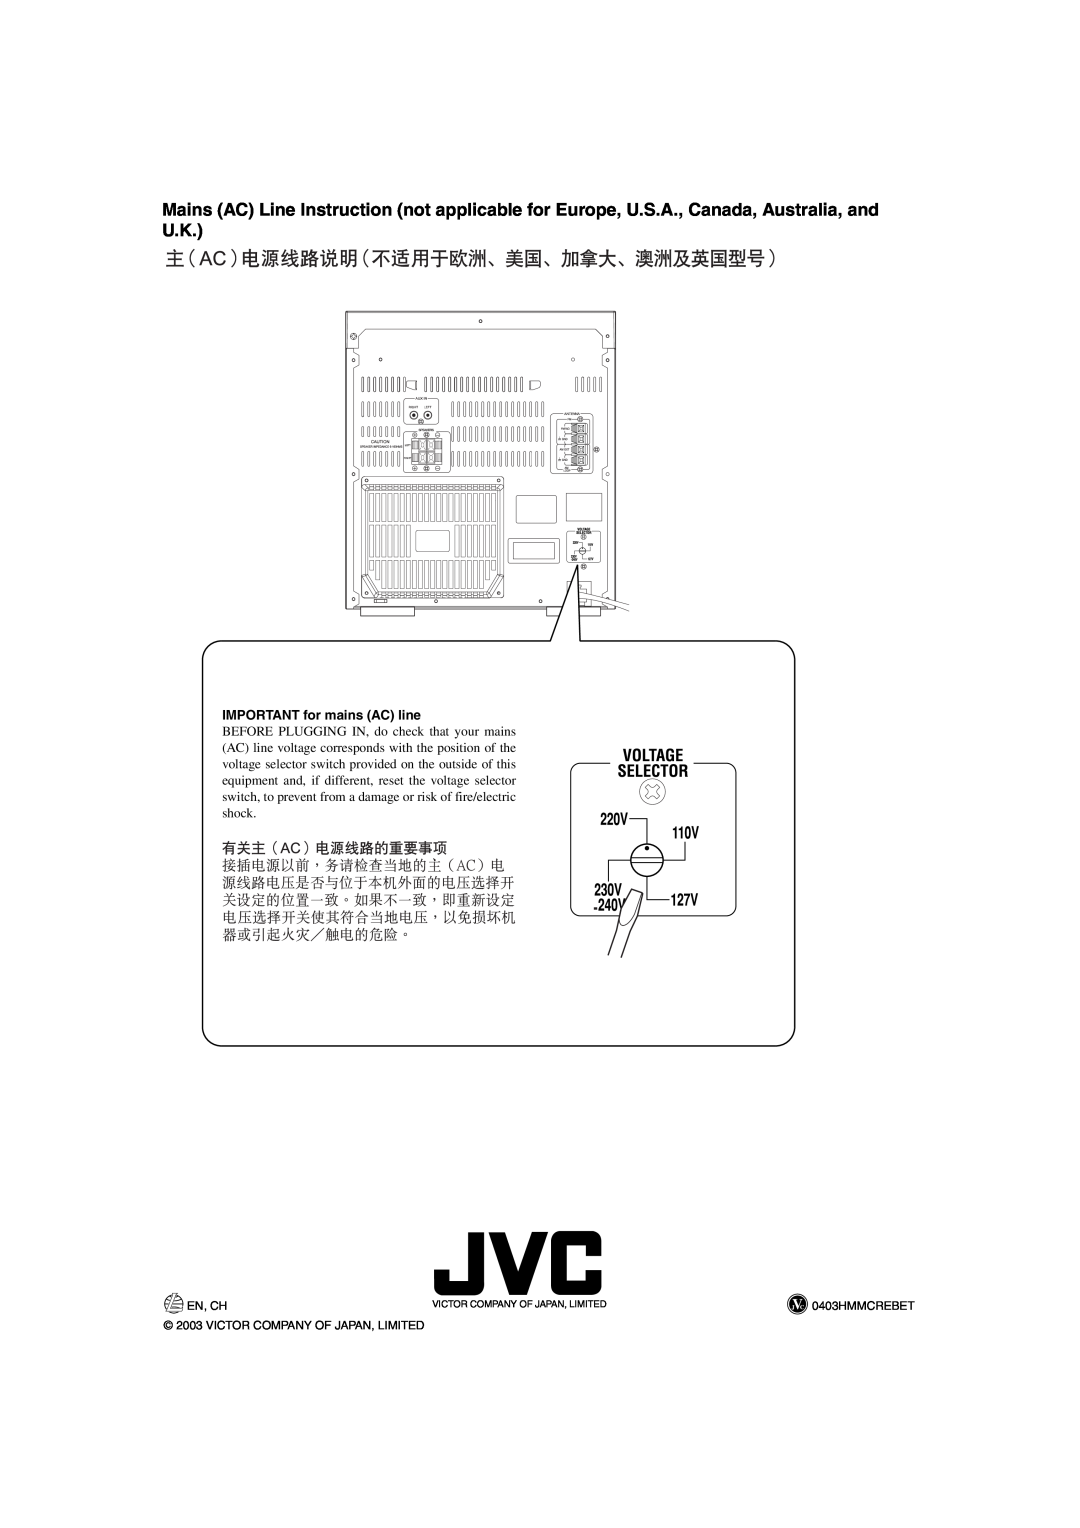 JVC MX-GA3V, LVT1091-001A, SP-MXGA3V IMPORTANT for mains AC line, En, Ch, 0403HMMCREBET, Victor Company Of Japan, Limited 